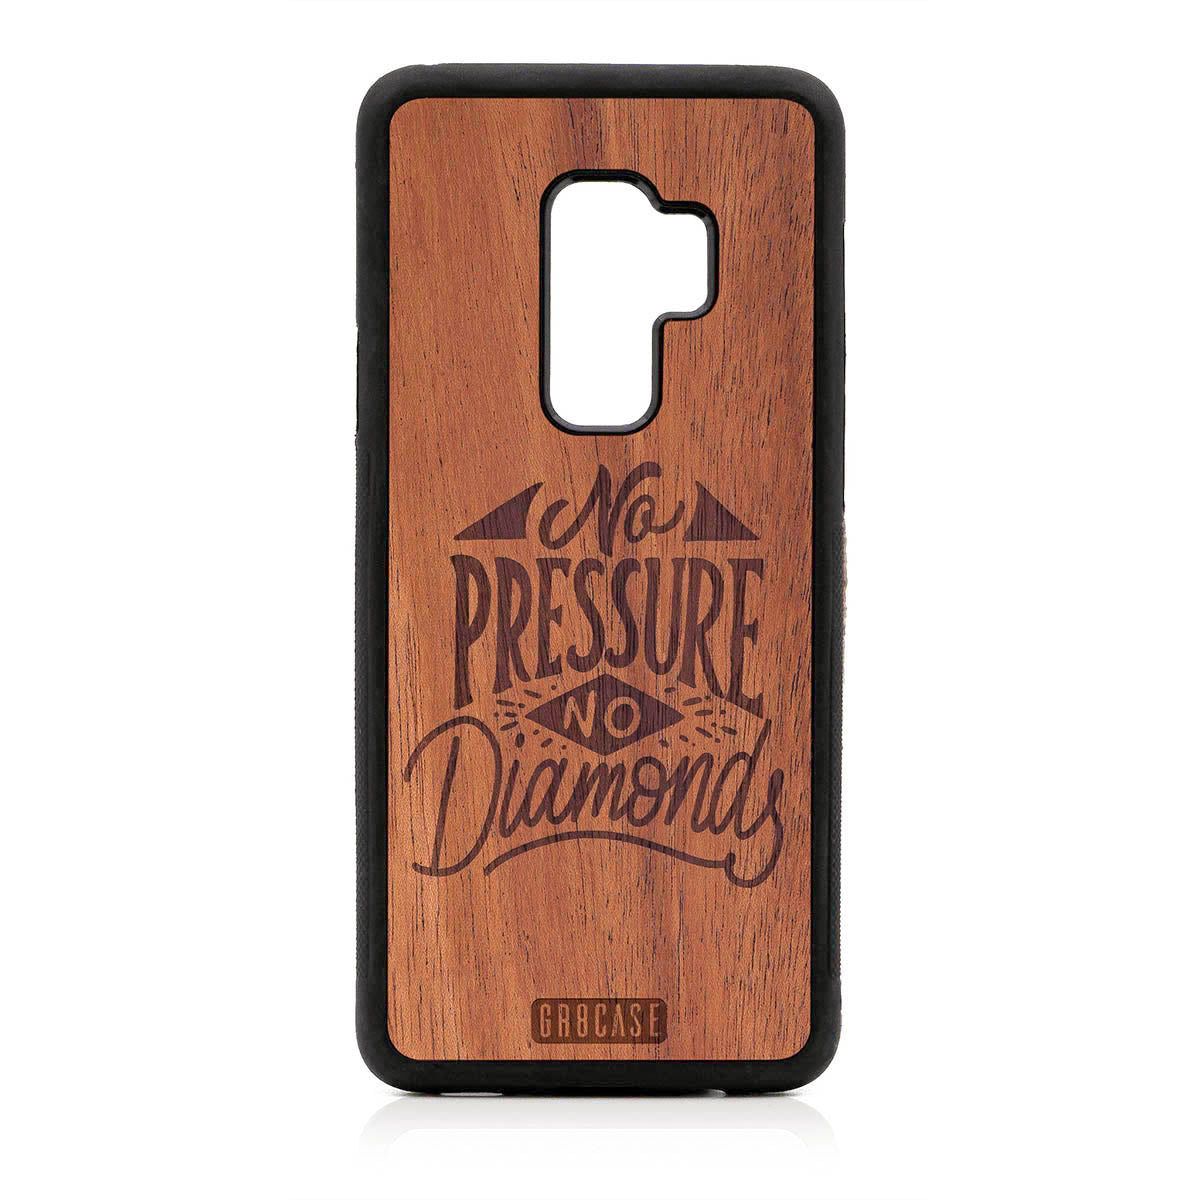 No Pressure No Diamonds Design Wood Case For Samsung Galaxy S9 Plus